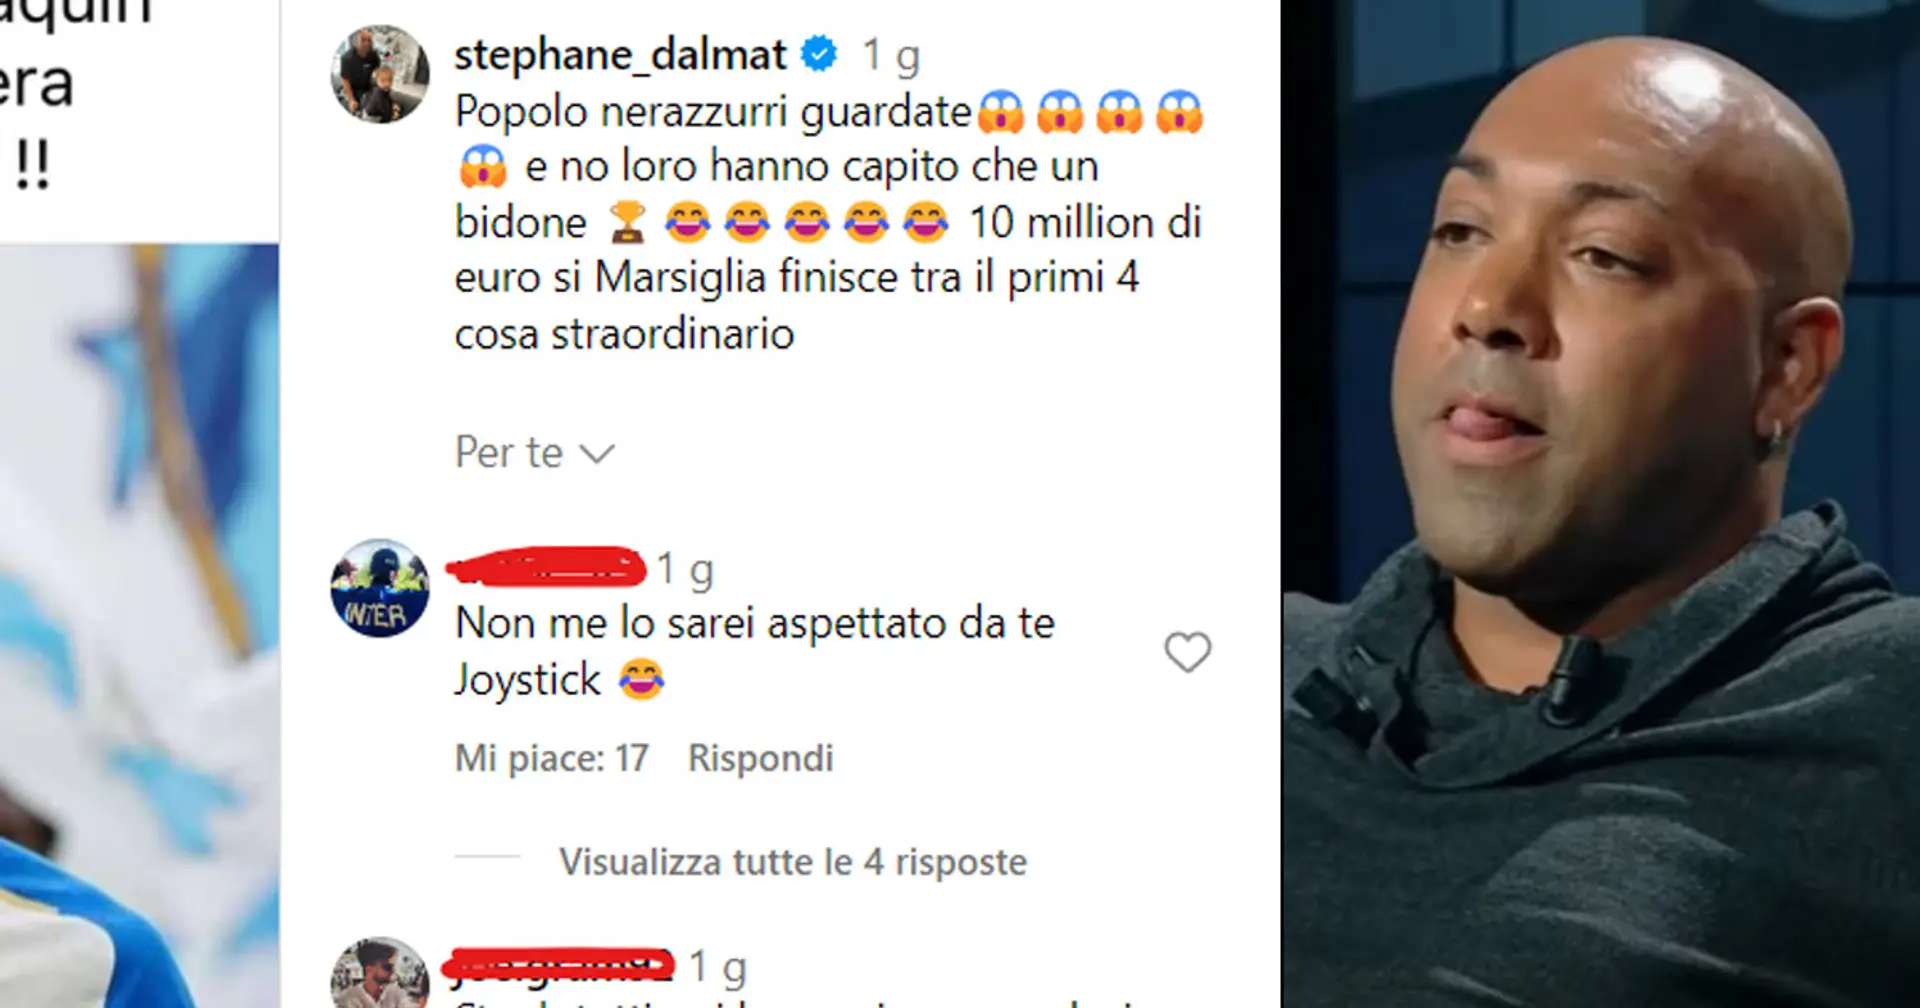 "Hanno capito che è un bidone", Dalmat manda un messaggio ai tifosi dell'Inter e attacca un Nerazzurro in prestito